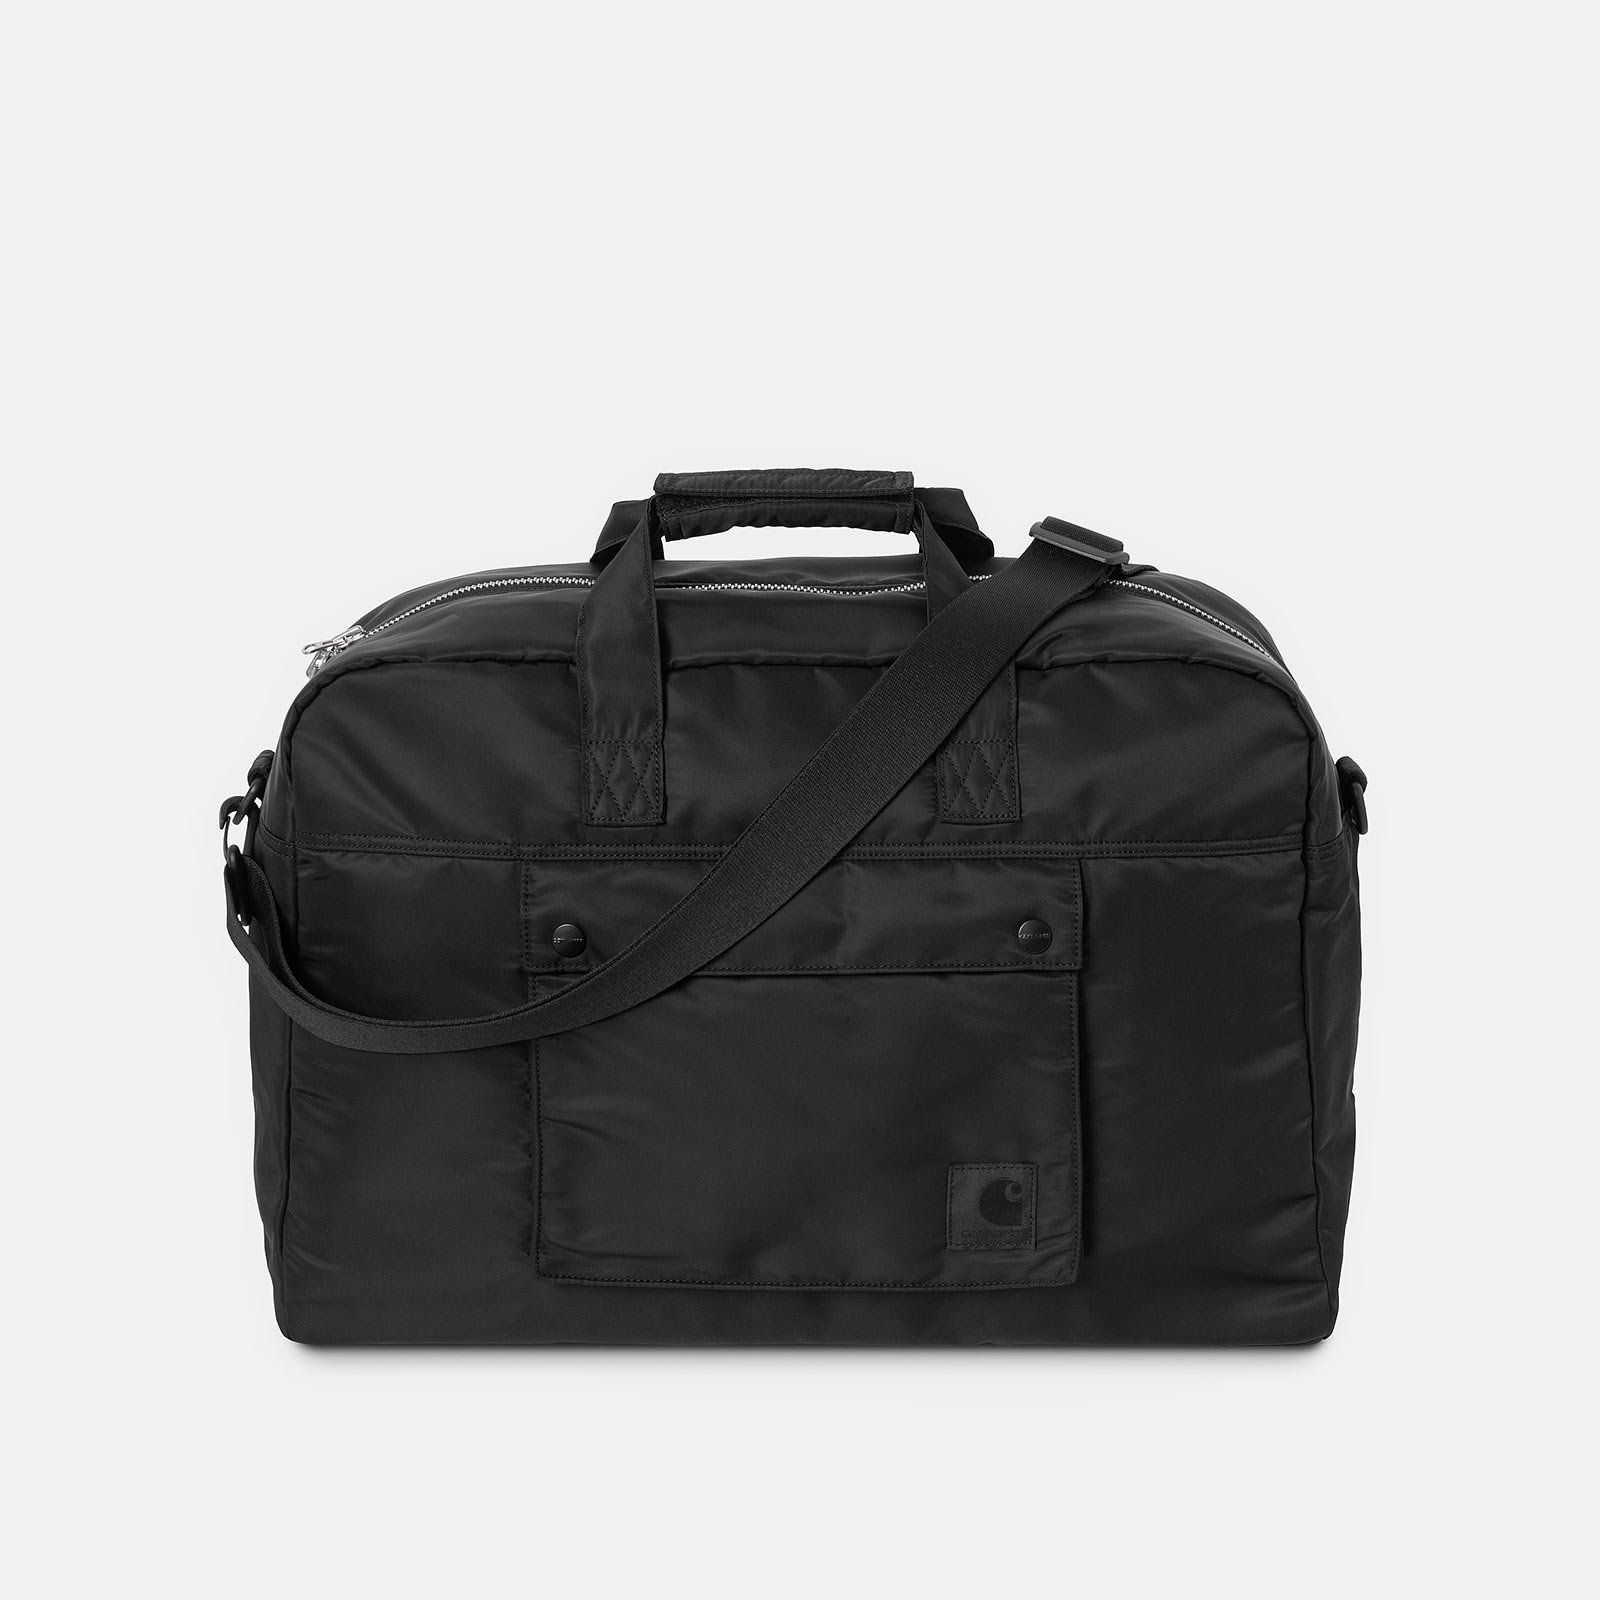 сумка Carhartt WIP Otley Weekend Bag  (I033105-black)  - цена, описание, фото 1